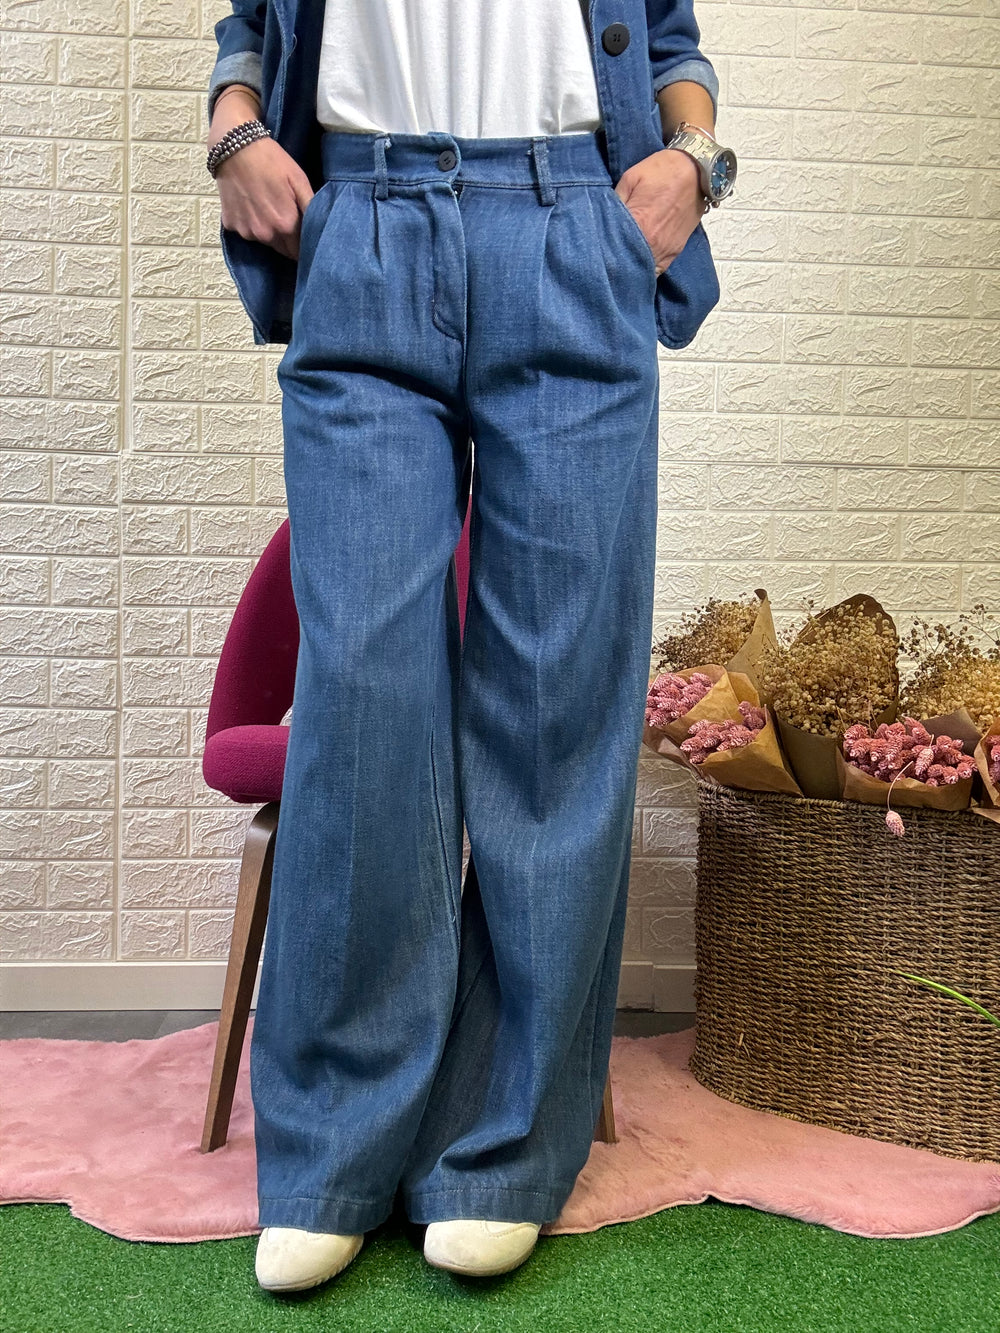 Nuovo jeans palazzo in tela denim